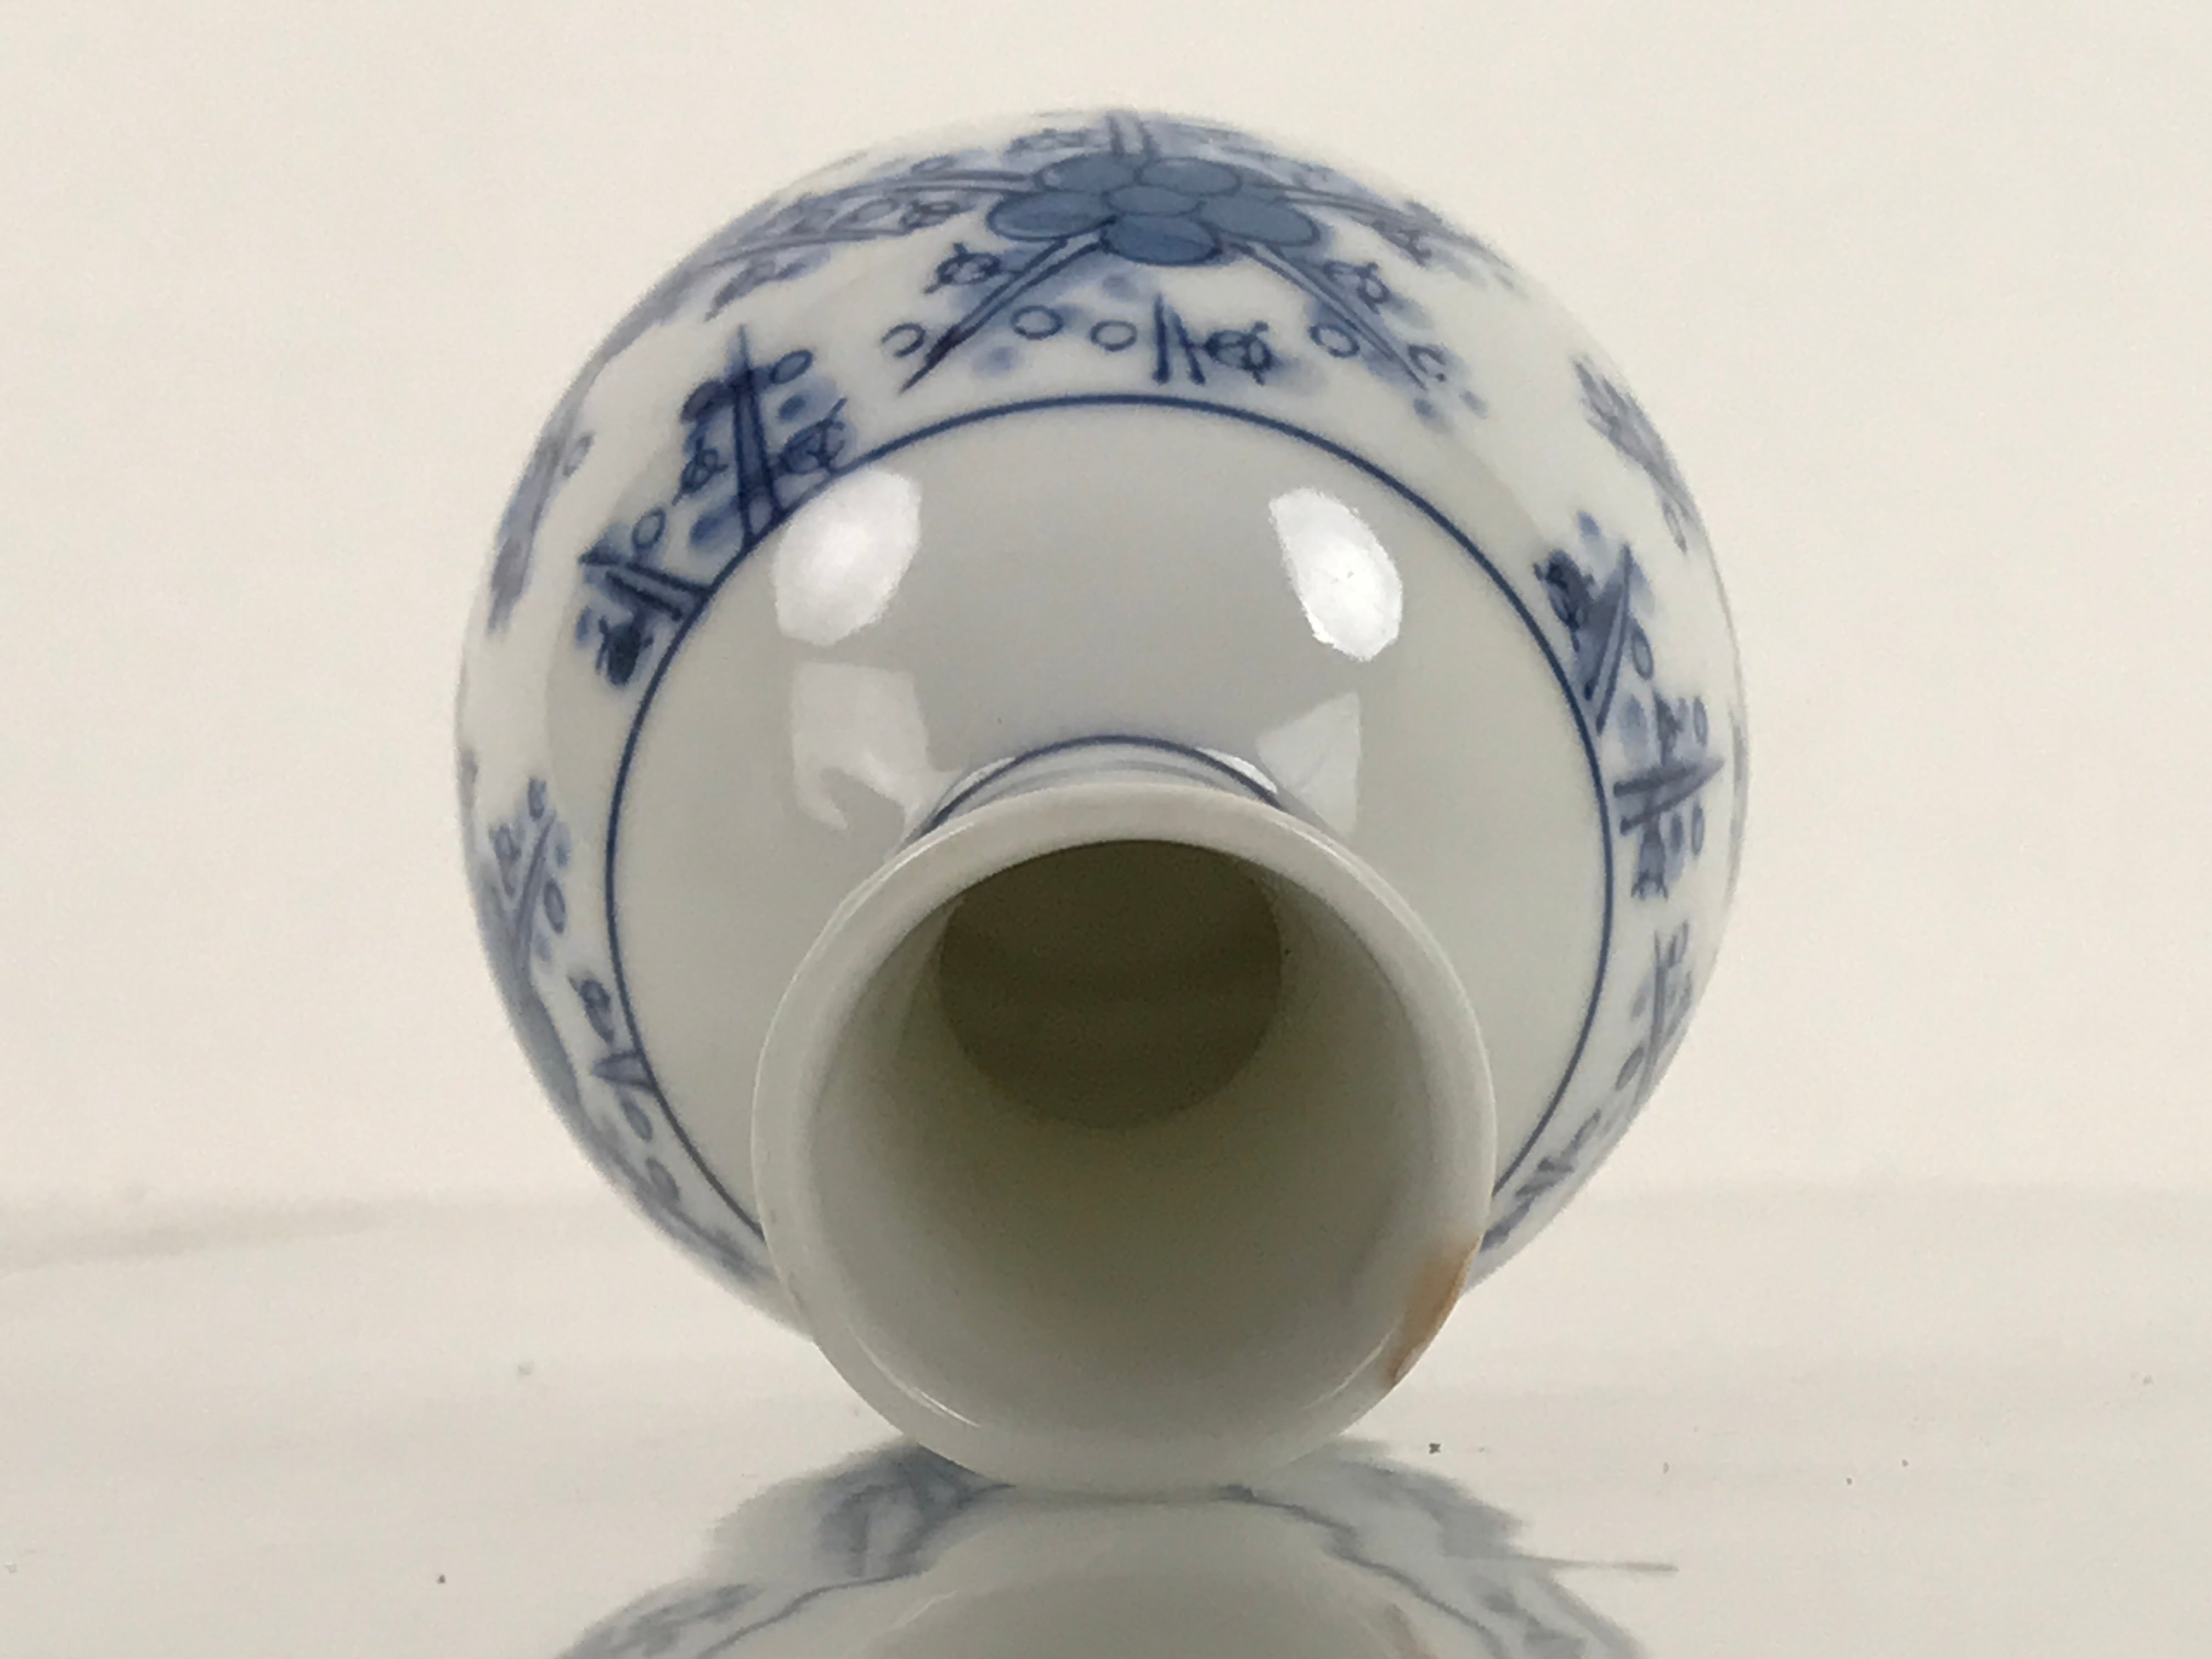 Japanese Sake Bottle Porcelain Tokkuri Vtg Atomic Plum Blossoms White Blue TS683